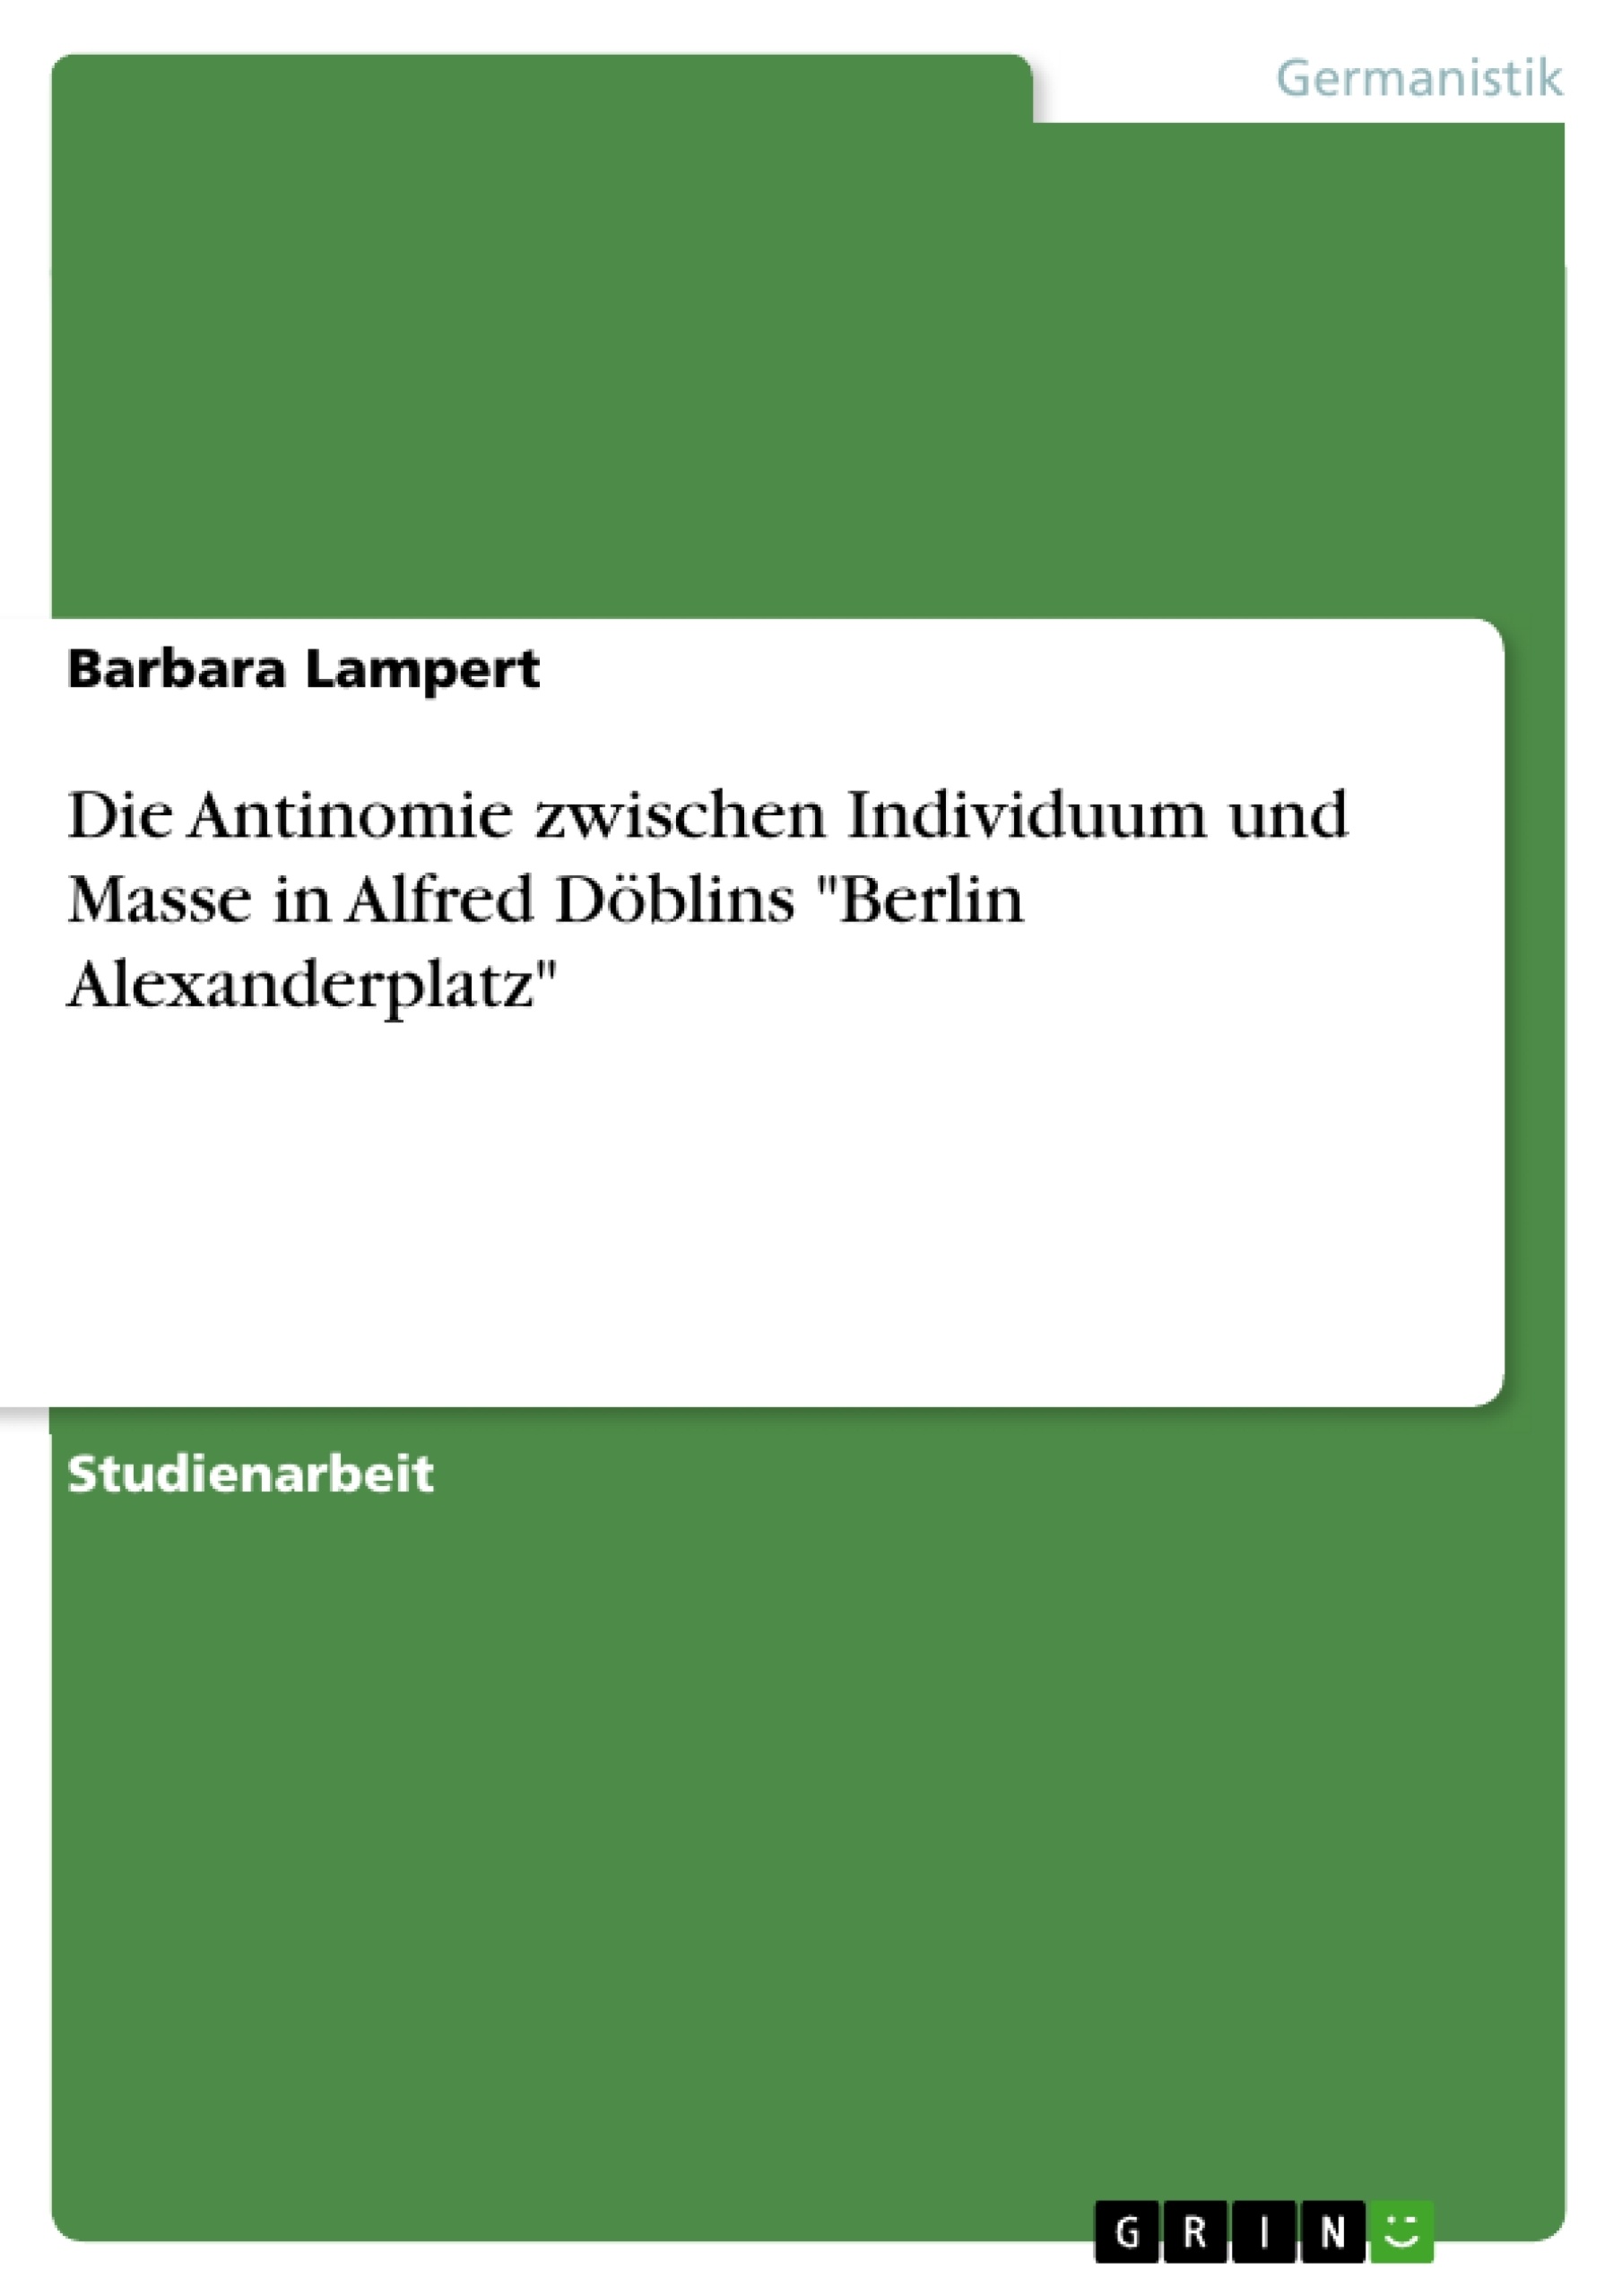 Title: Die Antinomie zwischen Individuum und Masse in Alfred Döblins "Berlin Alexanderplatz"